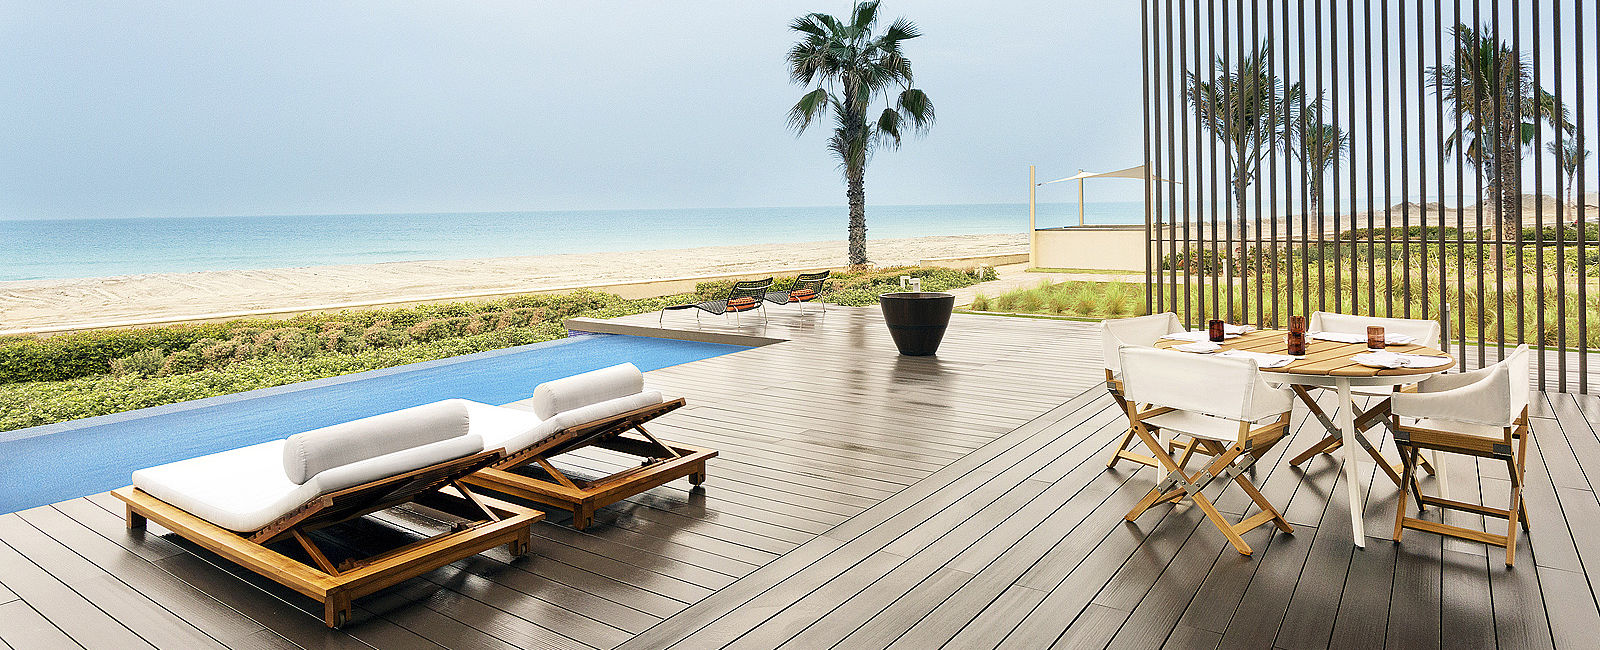 HOTEL TIPPS
 The Oberoi Beach Resort Al Zorah 
 Luxus ganz privat 